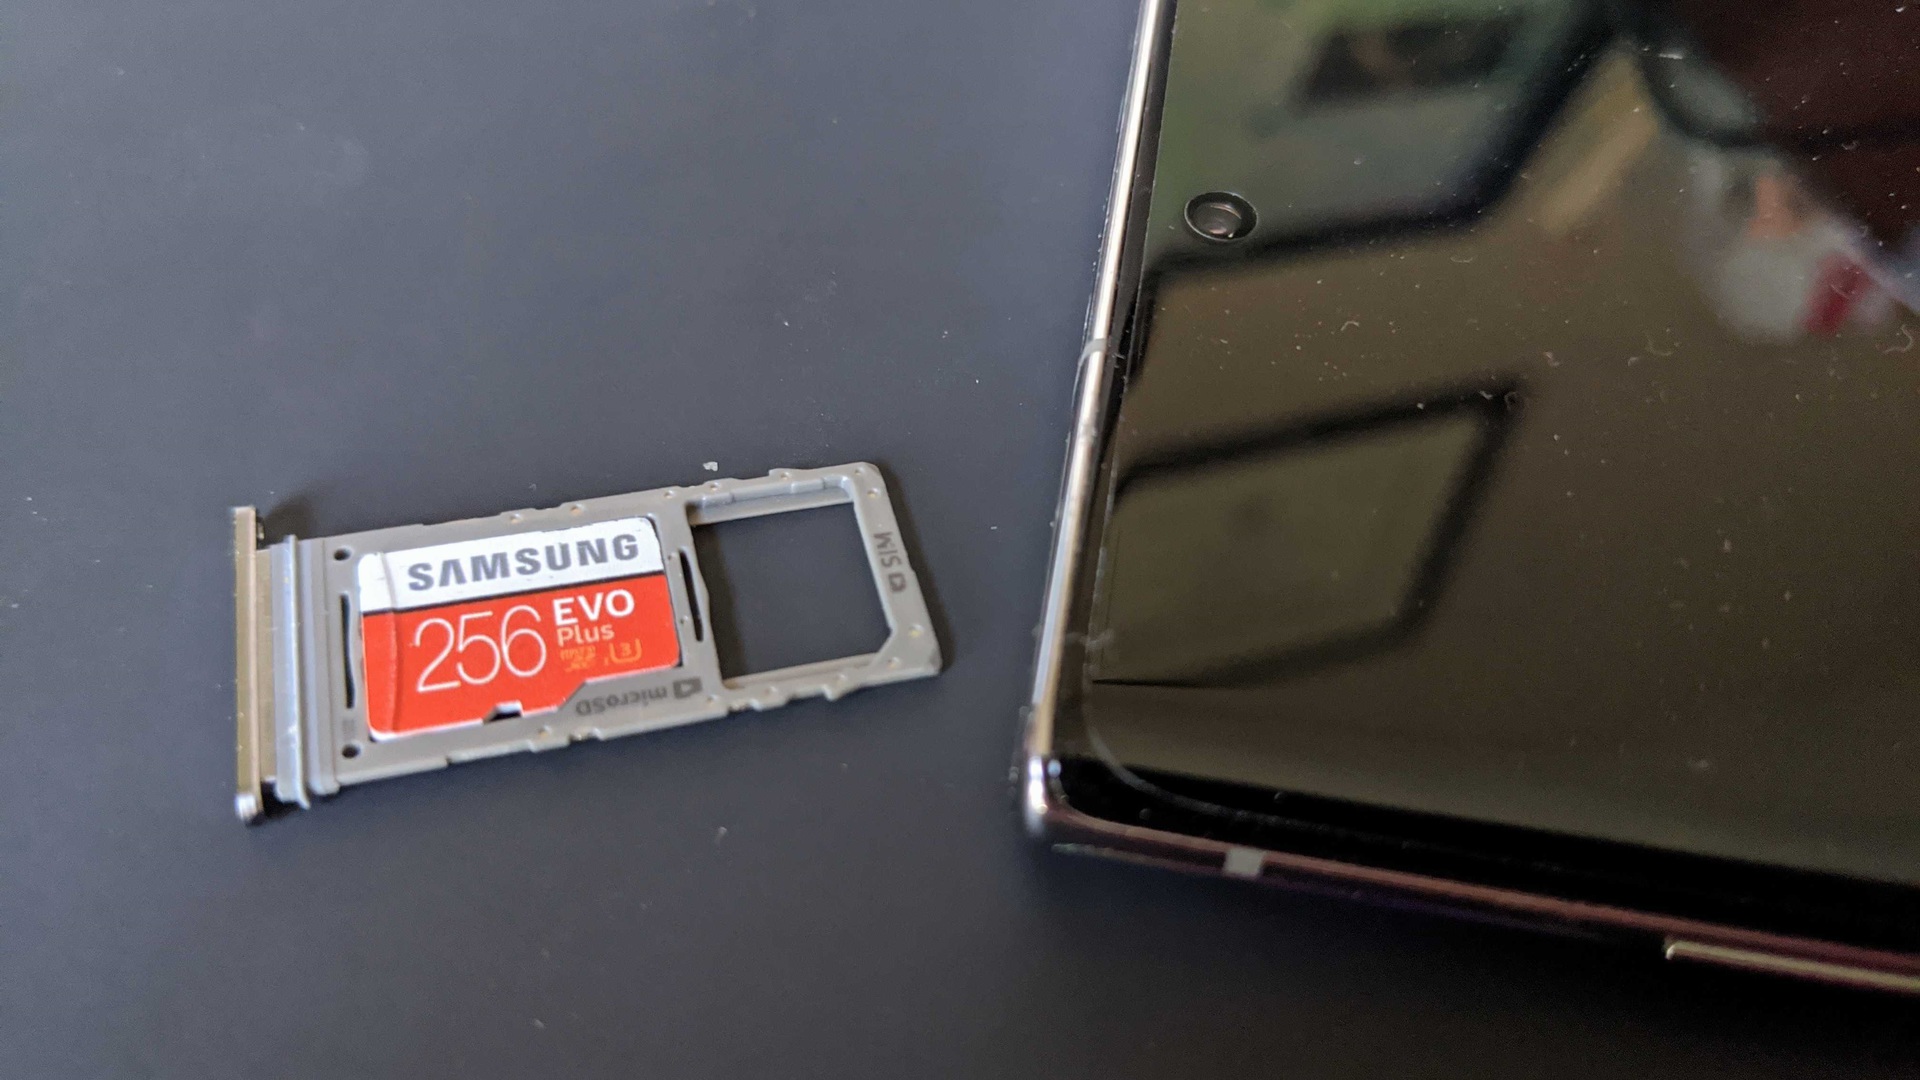 Samsung Evo microSD Cyber Monday deals